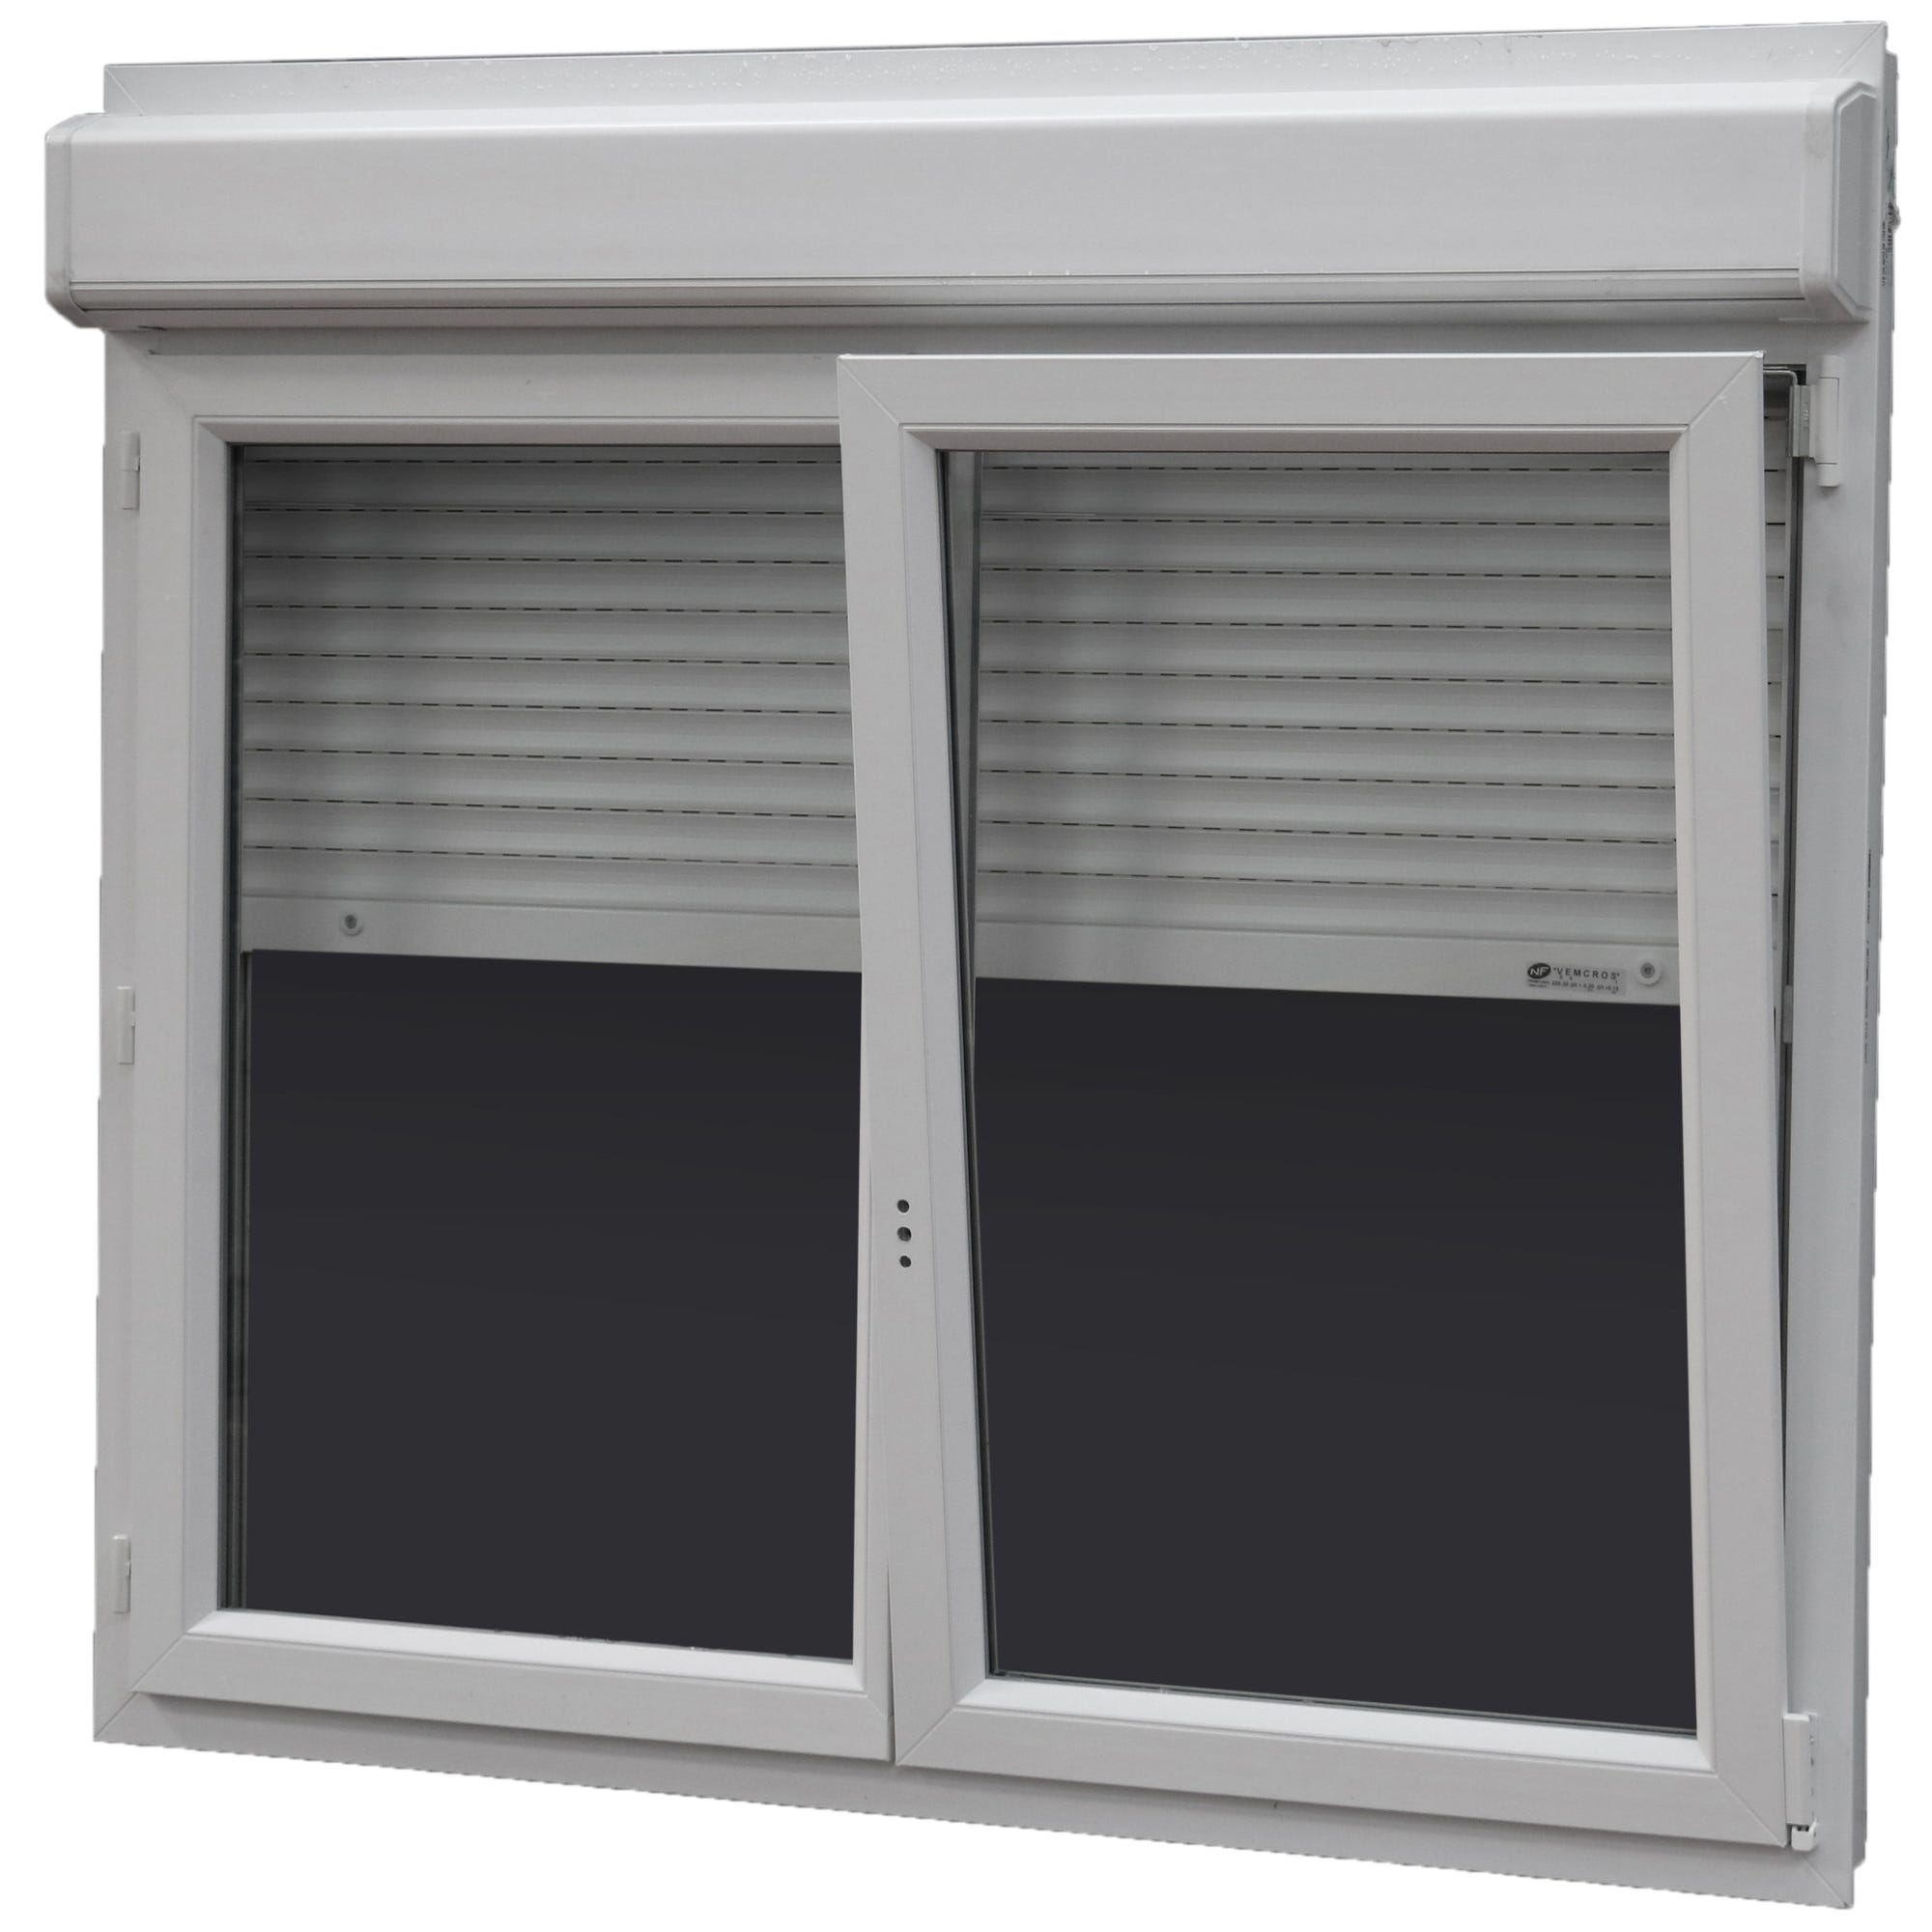 Fenêtre PVC H.115 x l.140 cm oscillo-battant 2 vantaux avec volet roulant intégré blanc 1